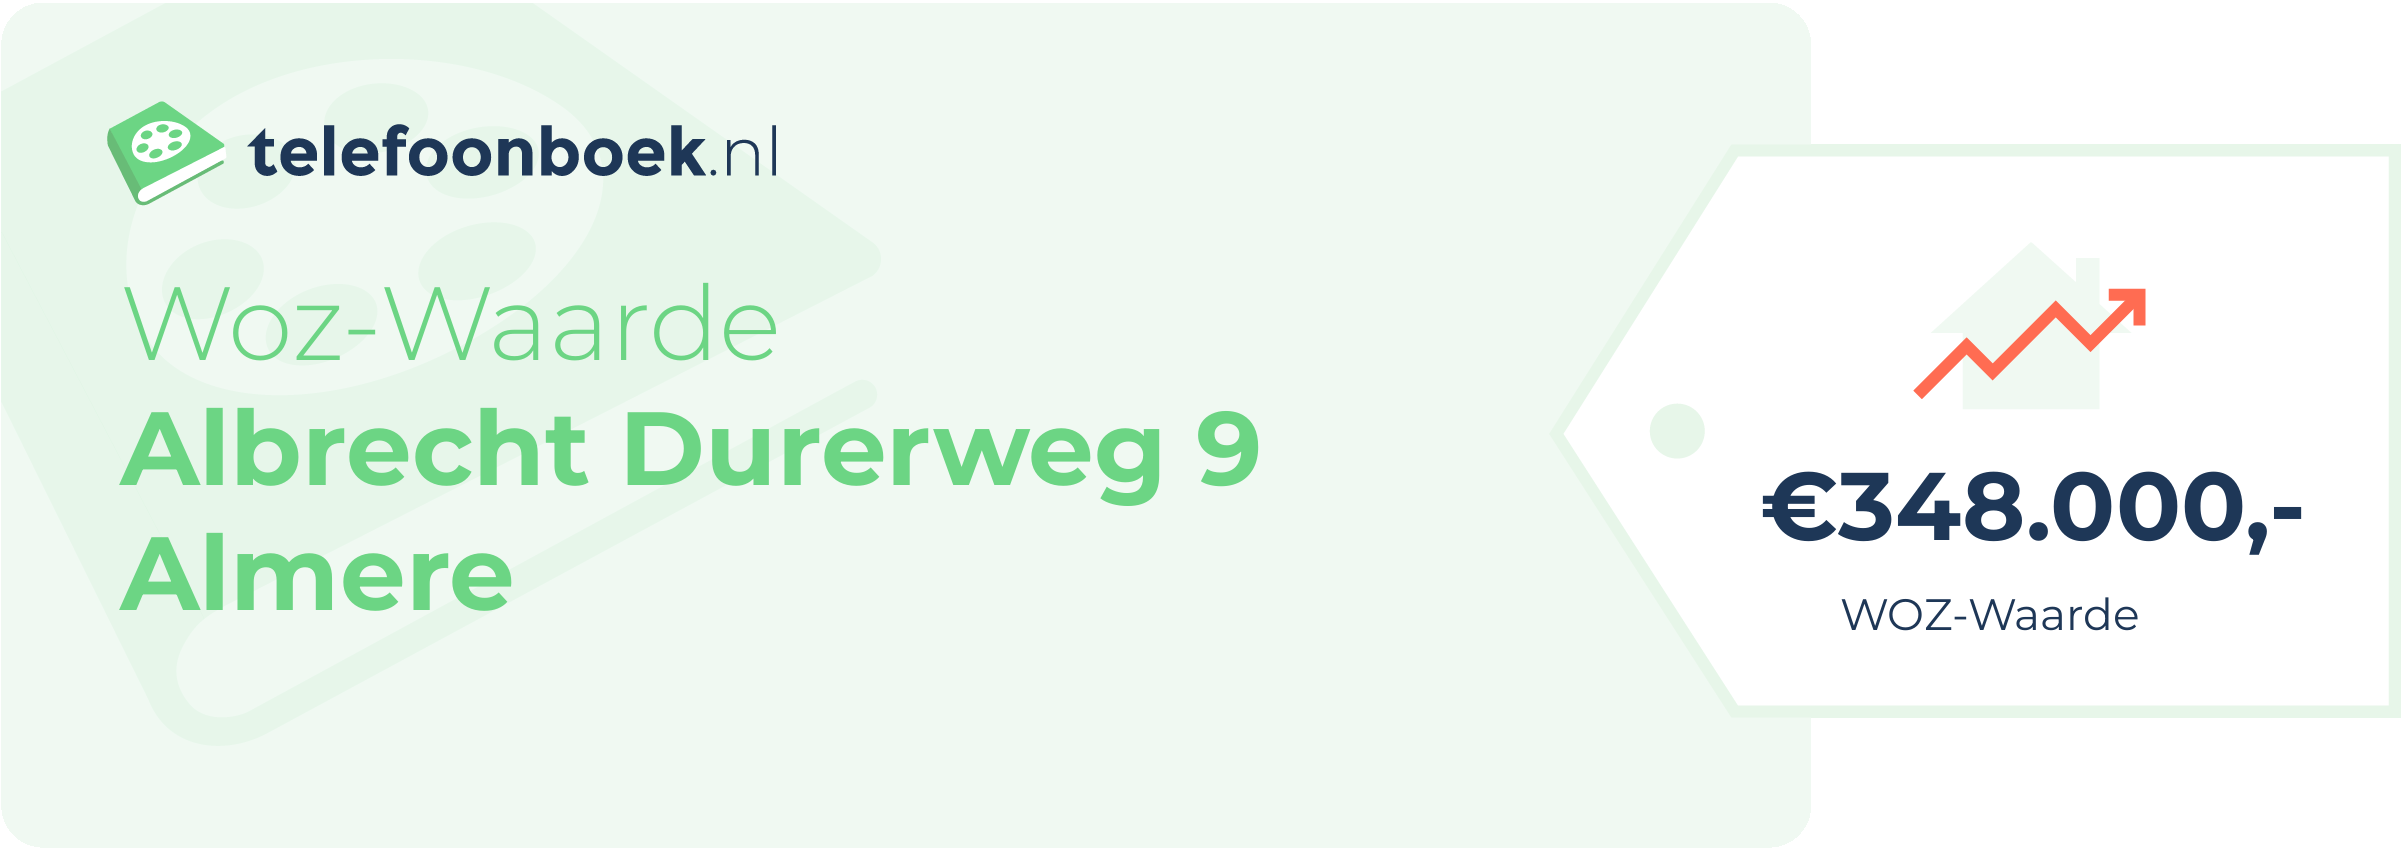 WOZ-waarde Albrecht Durerweg 9 Almere